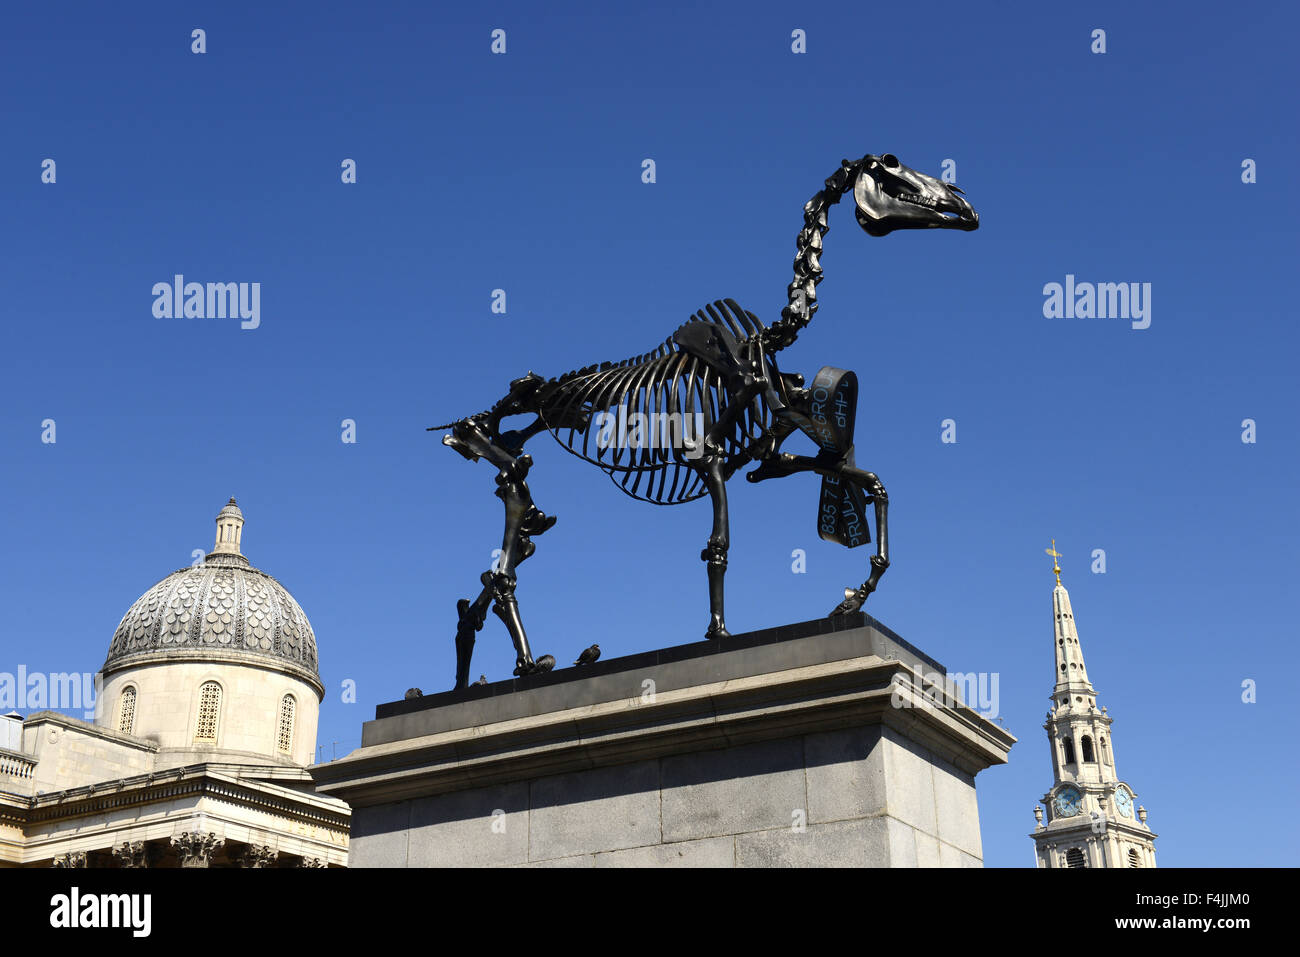 Quatrième sculpture plinthe, Don cheval par Hans Haacke à Trafalgar Square, Londres, Angleterre, Royaume-Uni Banque D'Images